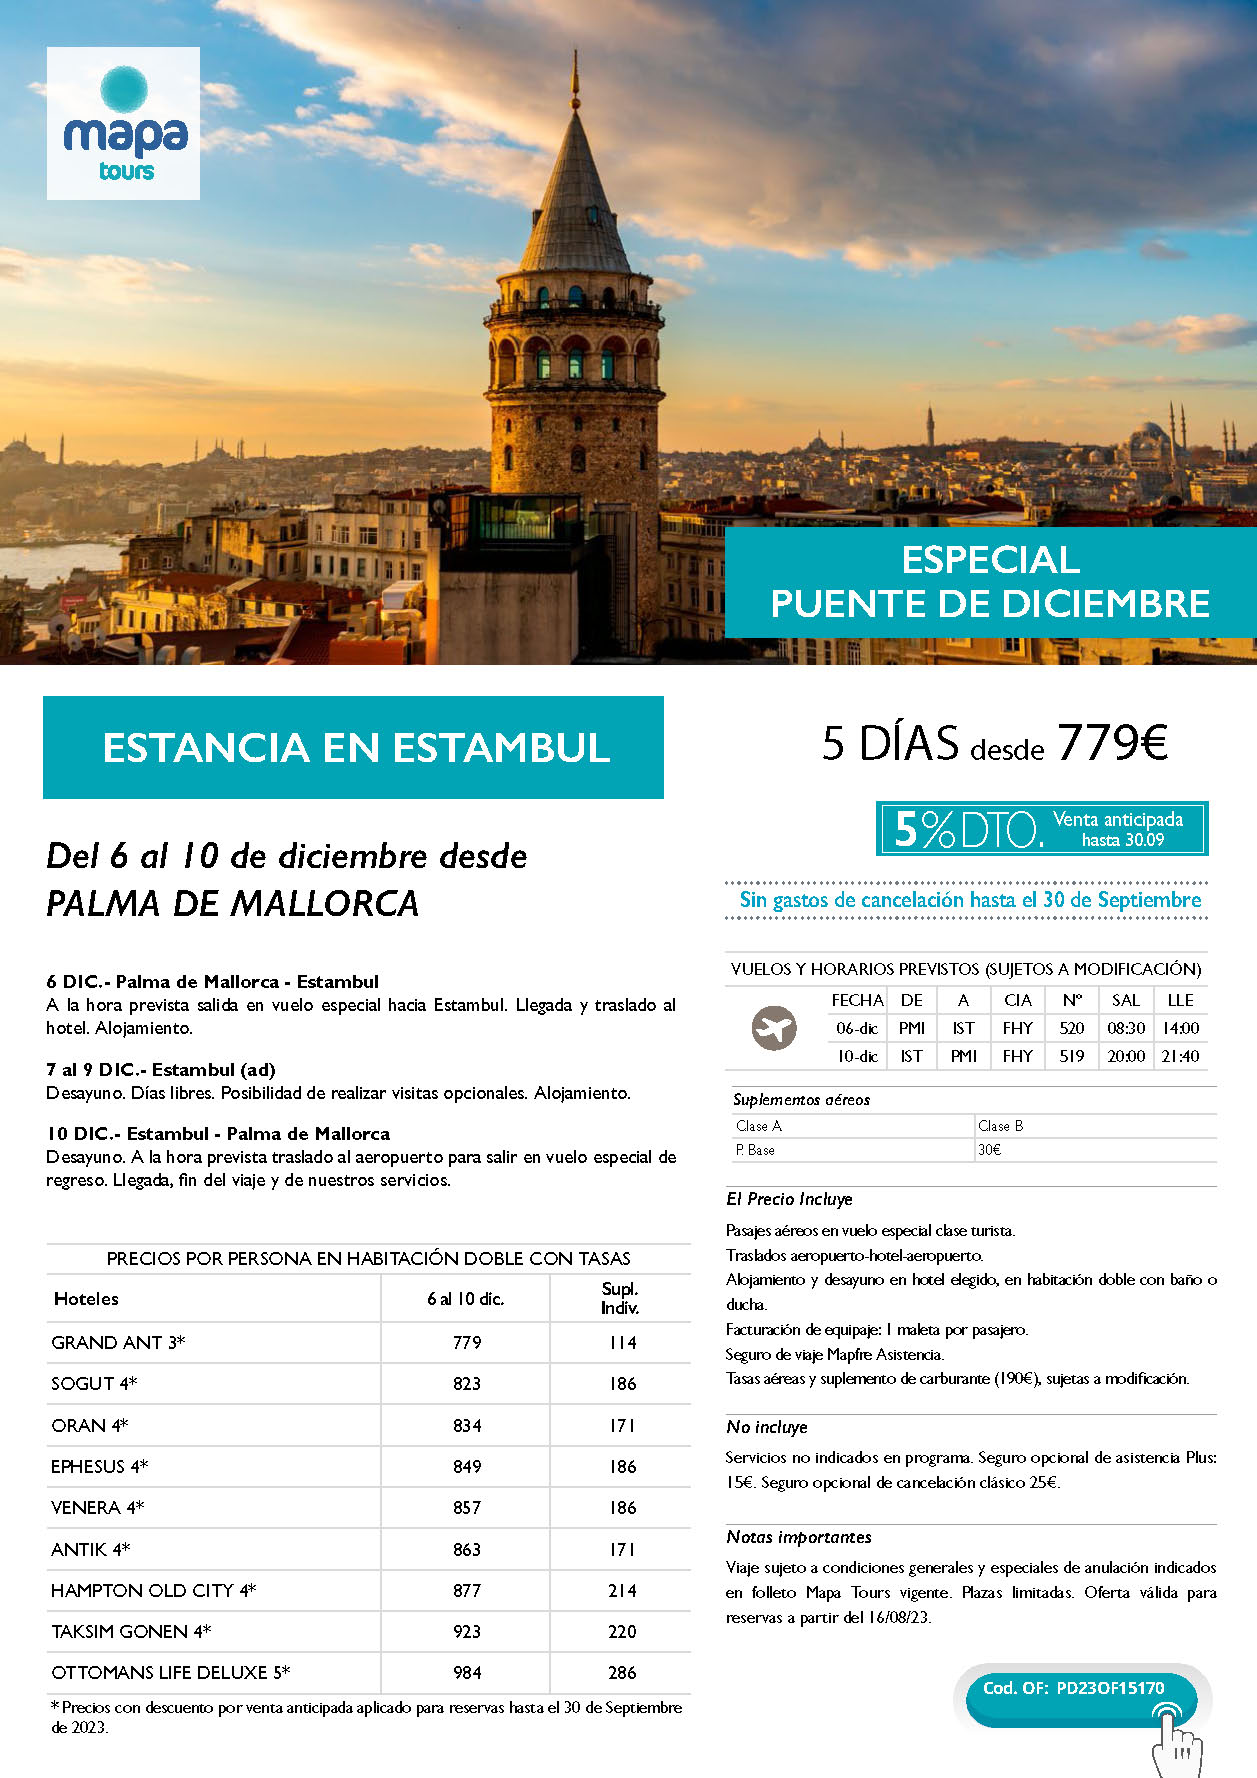 Oferta Mapa Tours Puente de Diciembre 2023 Estancia en Estambul 5 dias salida 6 diciembre en vuelo especial directo desde Palma de Mallorca